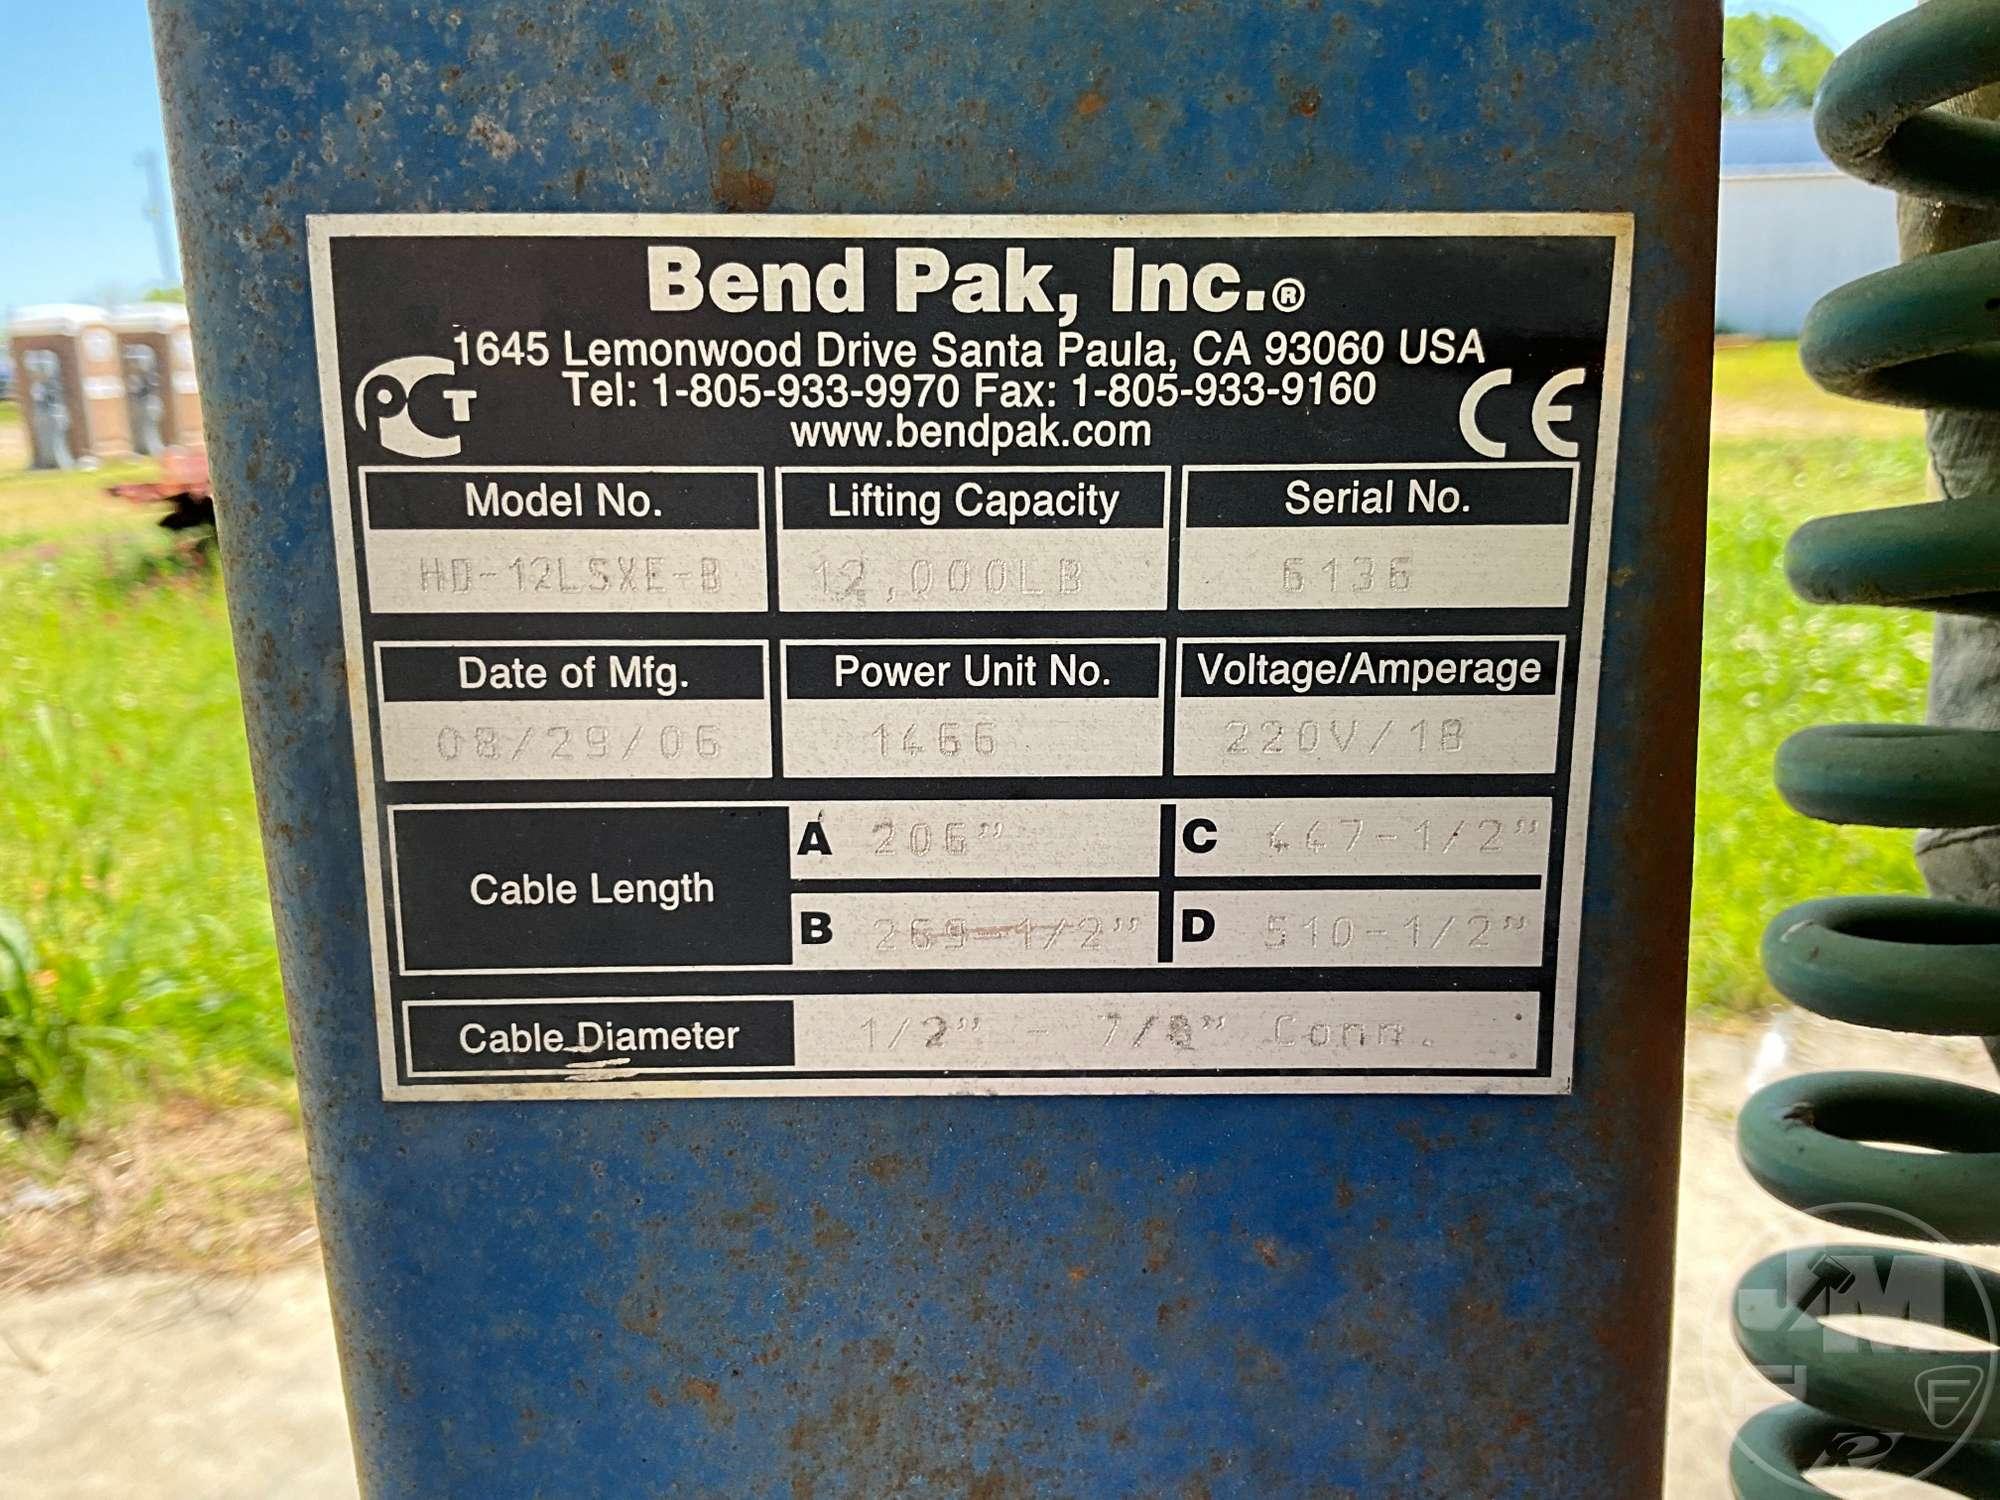 BEND PAK INC HD-12LSXE-B 4 POST CAR LIFT